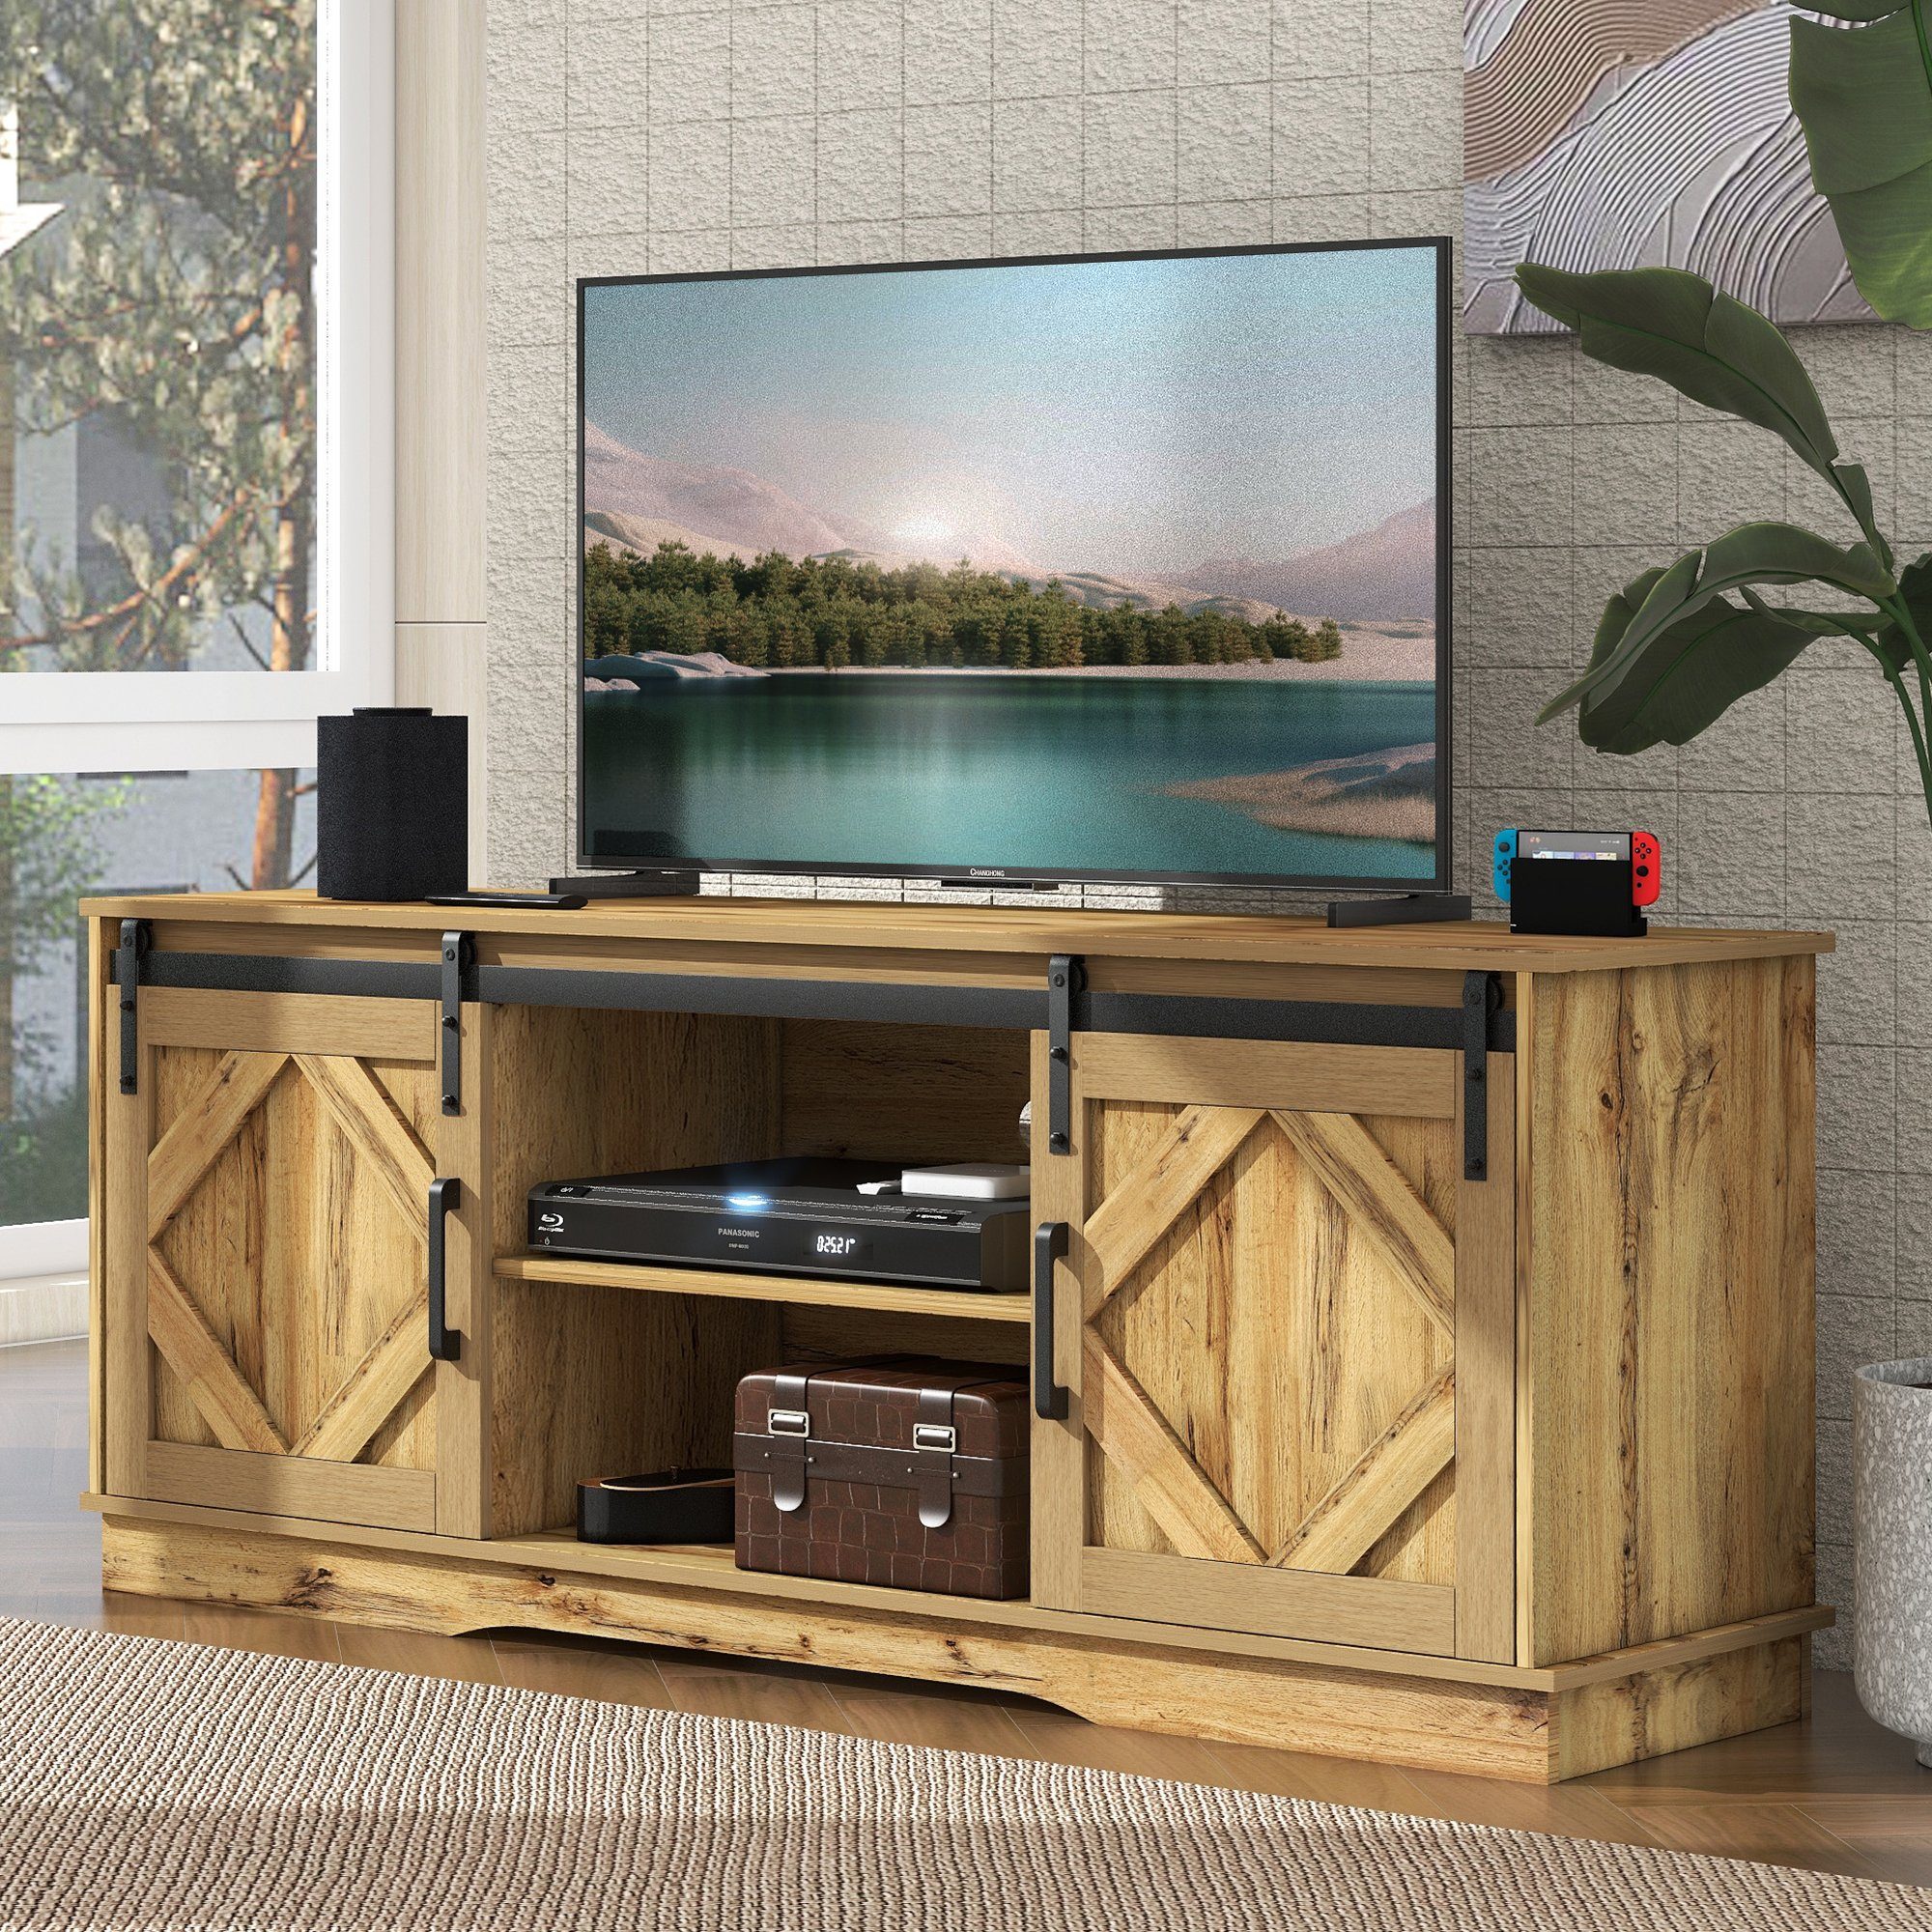 WISHDOR TV-Schrank Fernsehschrank Anrichte Beistellschrank (150*40*60cm Braun) mit 2 klassischen Schiebetüren, Einstellbare Regale